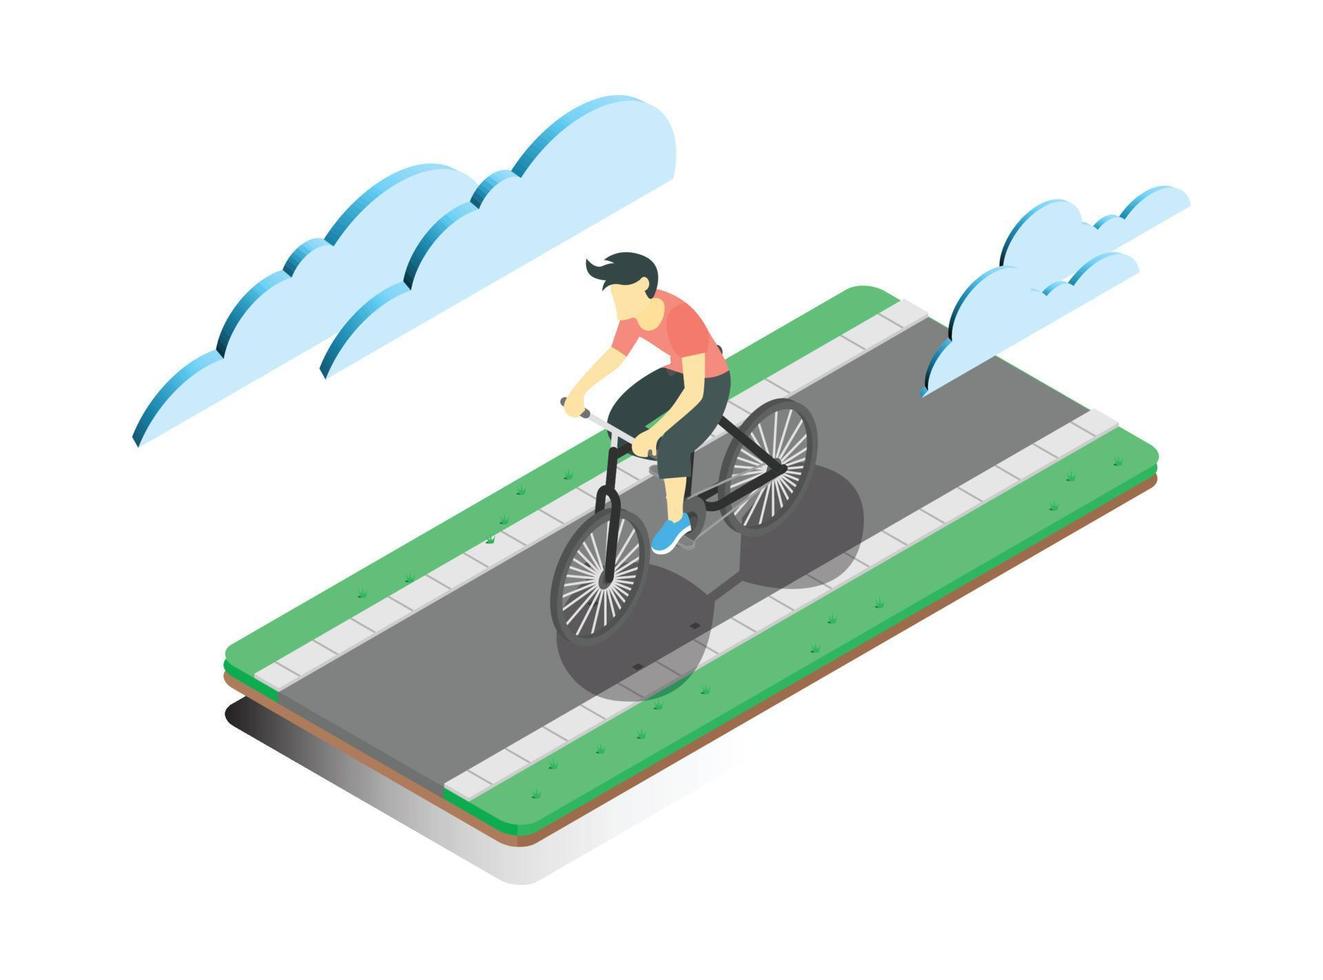 Diseño plano de ilustración isométrica 3d de ciclismo en la carretera, durante la mañana, ilustración isométrica vectorial adecuada para diagramas, infografías y otros activos gráficos vector